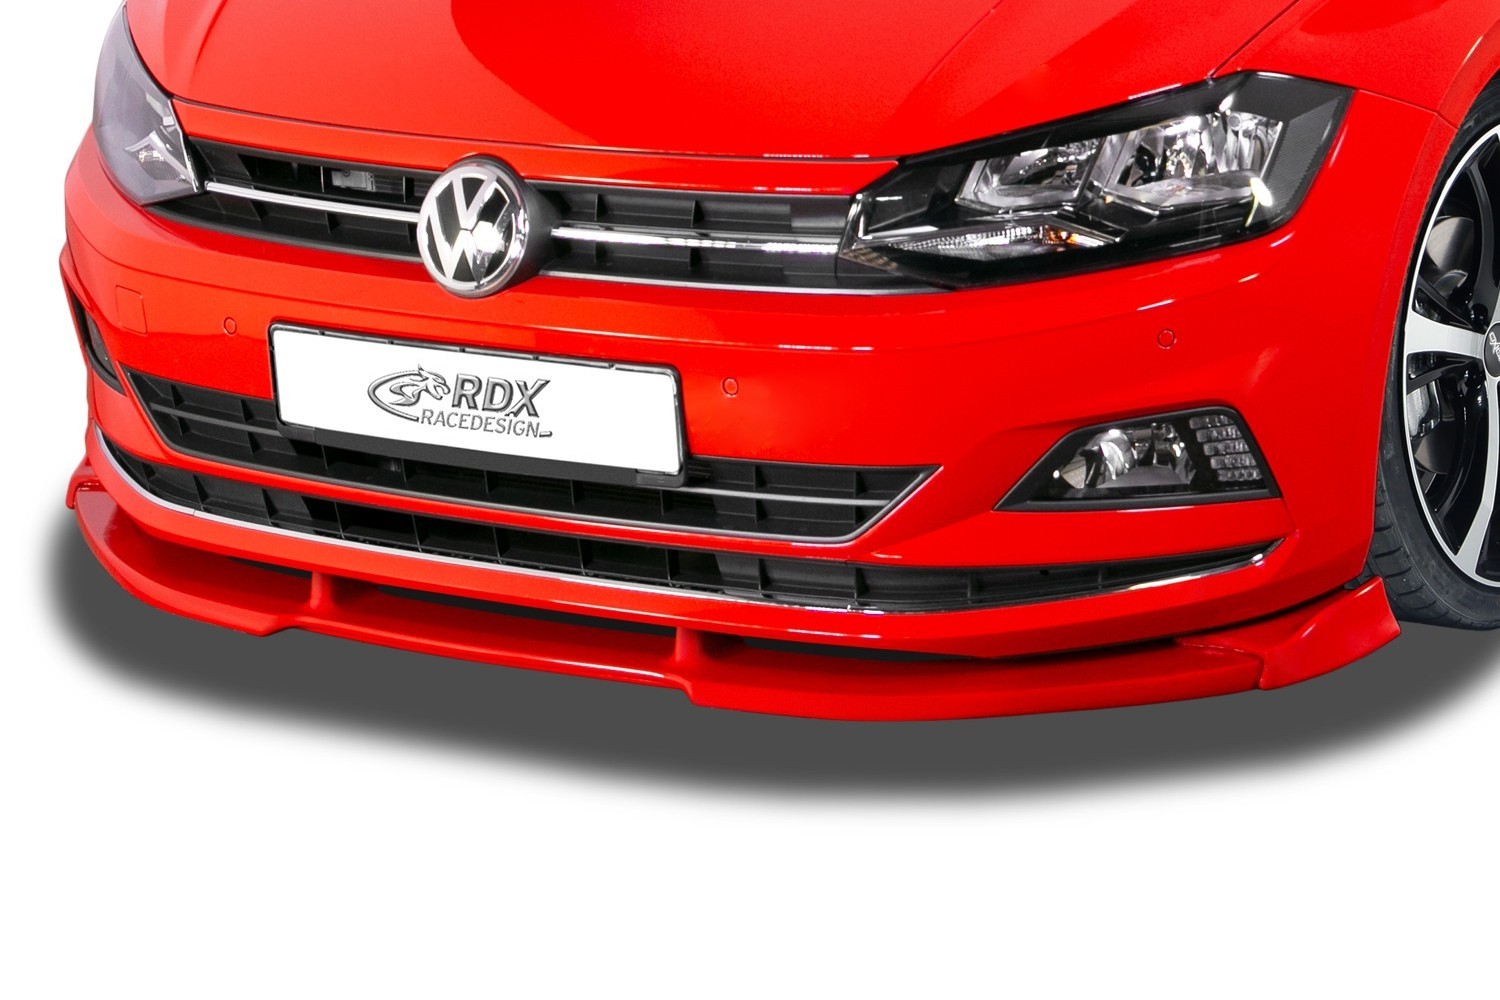  Voiture Cuir Tapis de Coffre pour VW Polo 2011-2018,  EntièRement Entouré AntidéRapant ImperméAble Anti Rayures Protection Coffre  Voiture, Accessoire Voiture,Black-Red